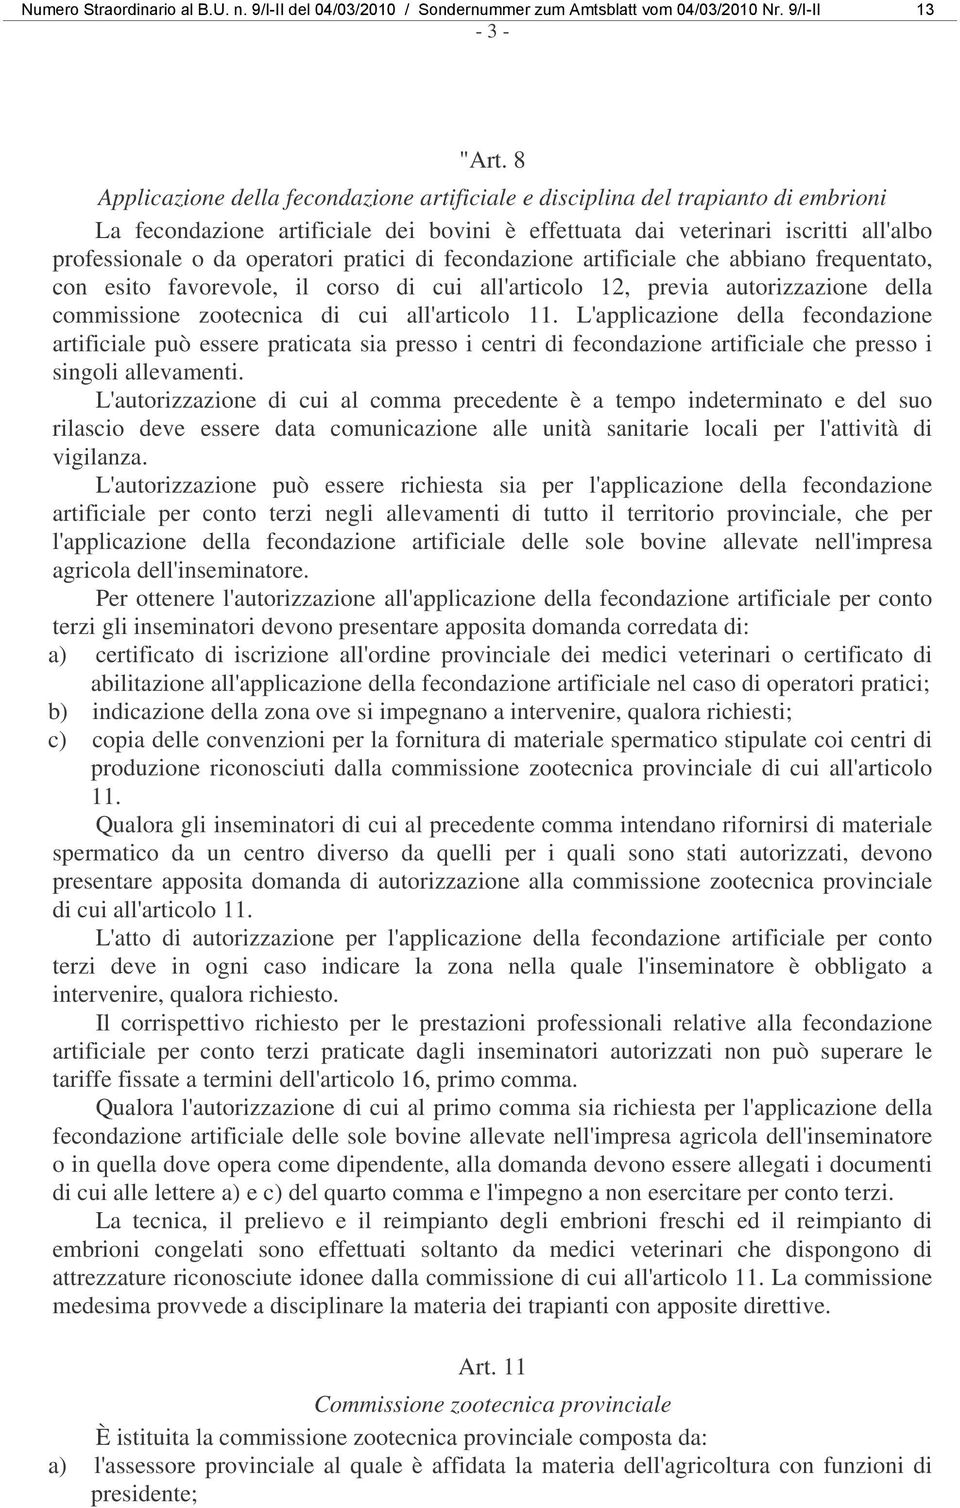 pratici di fecondazione artificiale che abbiano frequentato, con esito favorevole, il corso di cui all'articolo 12, previa autorizzazione della commissione zootecnica di cui all'articolo 11.